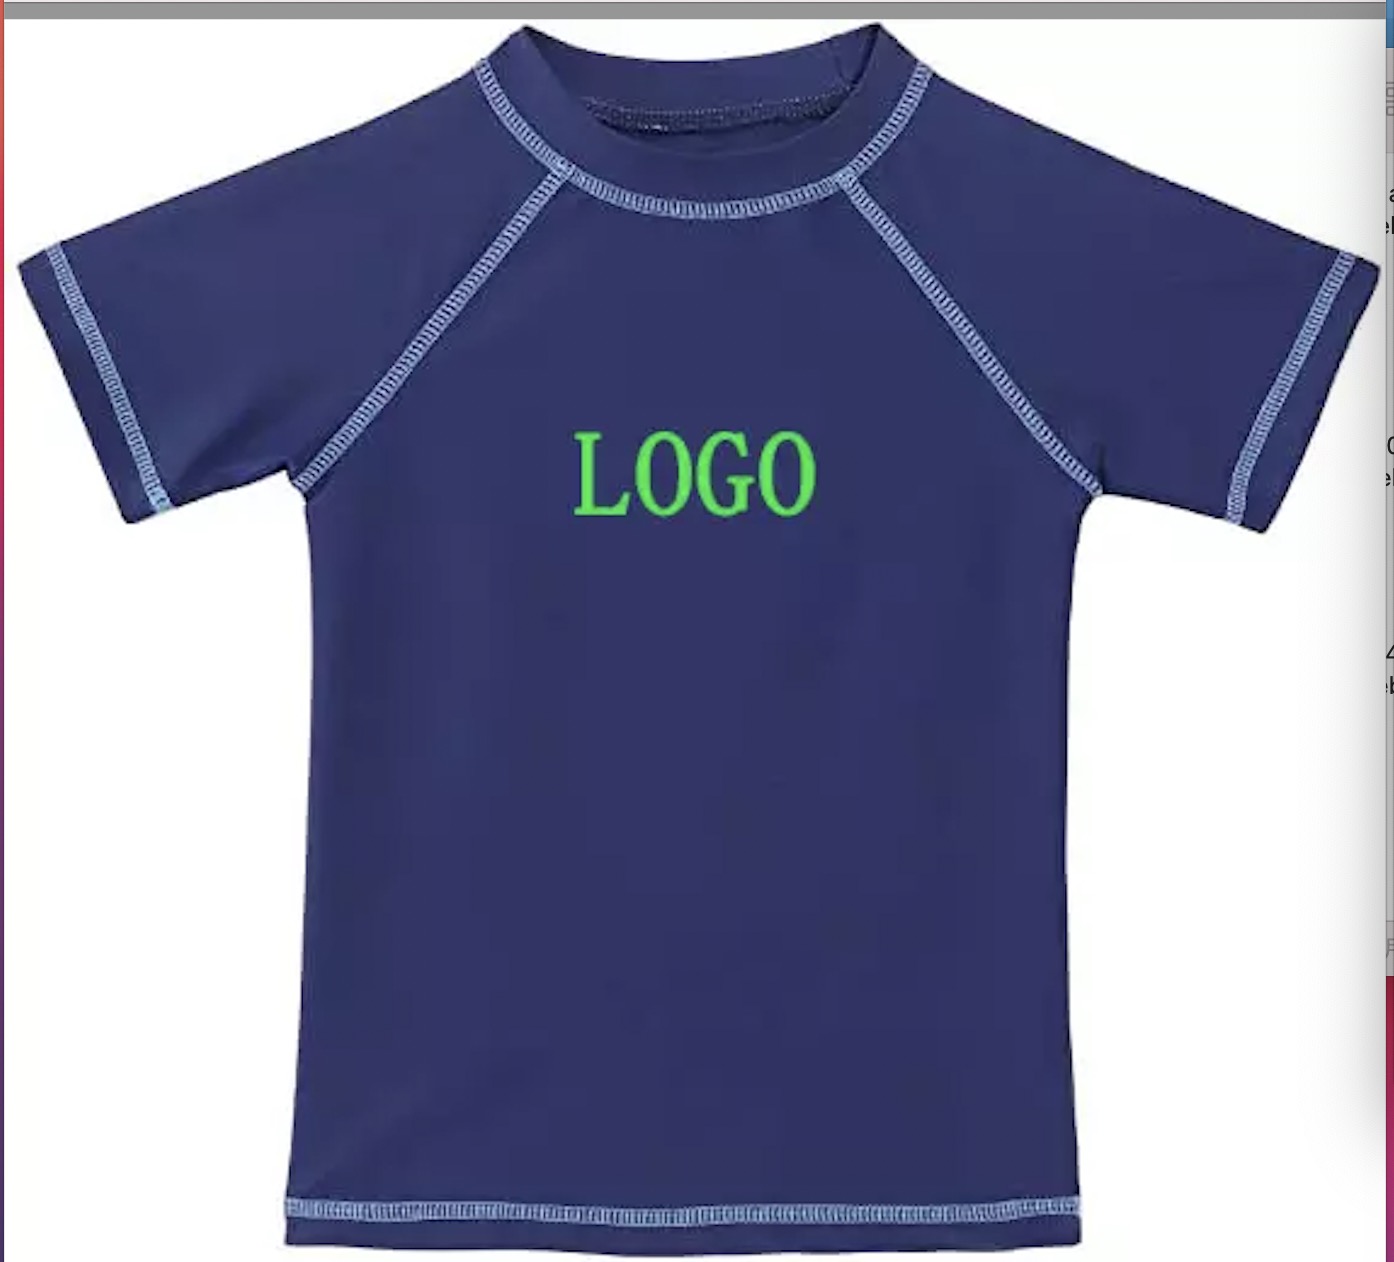 Großhandel individuelles Logo UV-Schutz Rash Guard Shirts Jungen Mädchen Kurzarm Rashguard Schwimmen T-Shirts Top